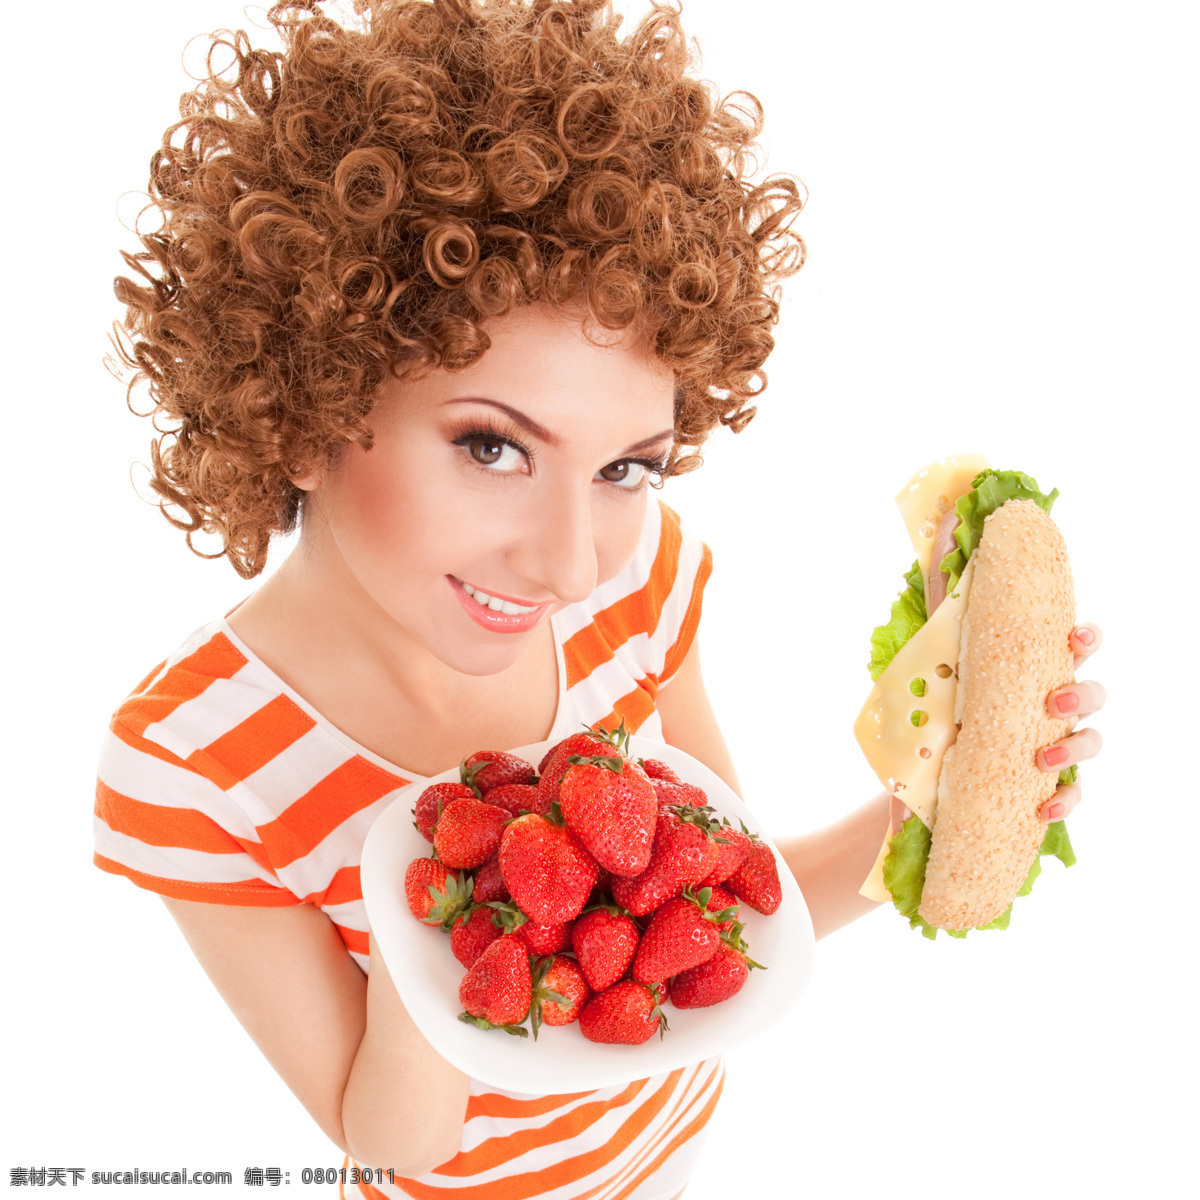 节食 减肥 美女图片 饮食减肥 瘦身 健身 健康饮食 时尚美女 性感美女 水果 草莓 面包 生活人物 人物图片